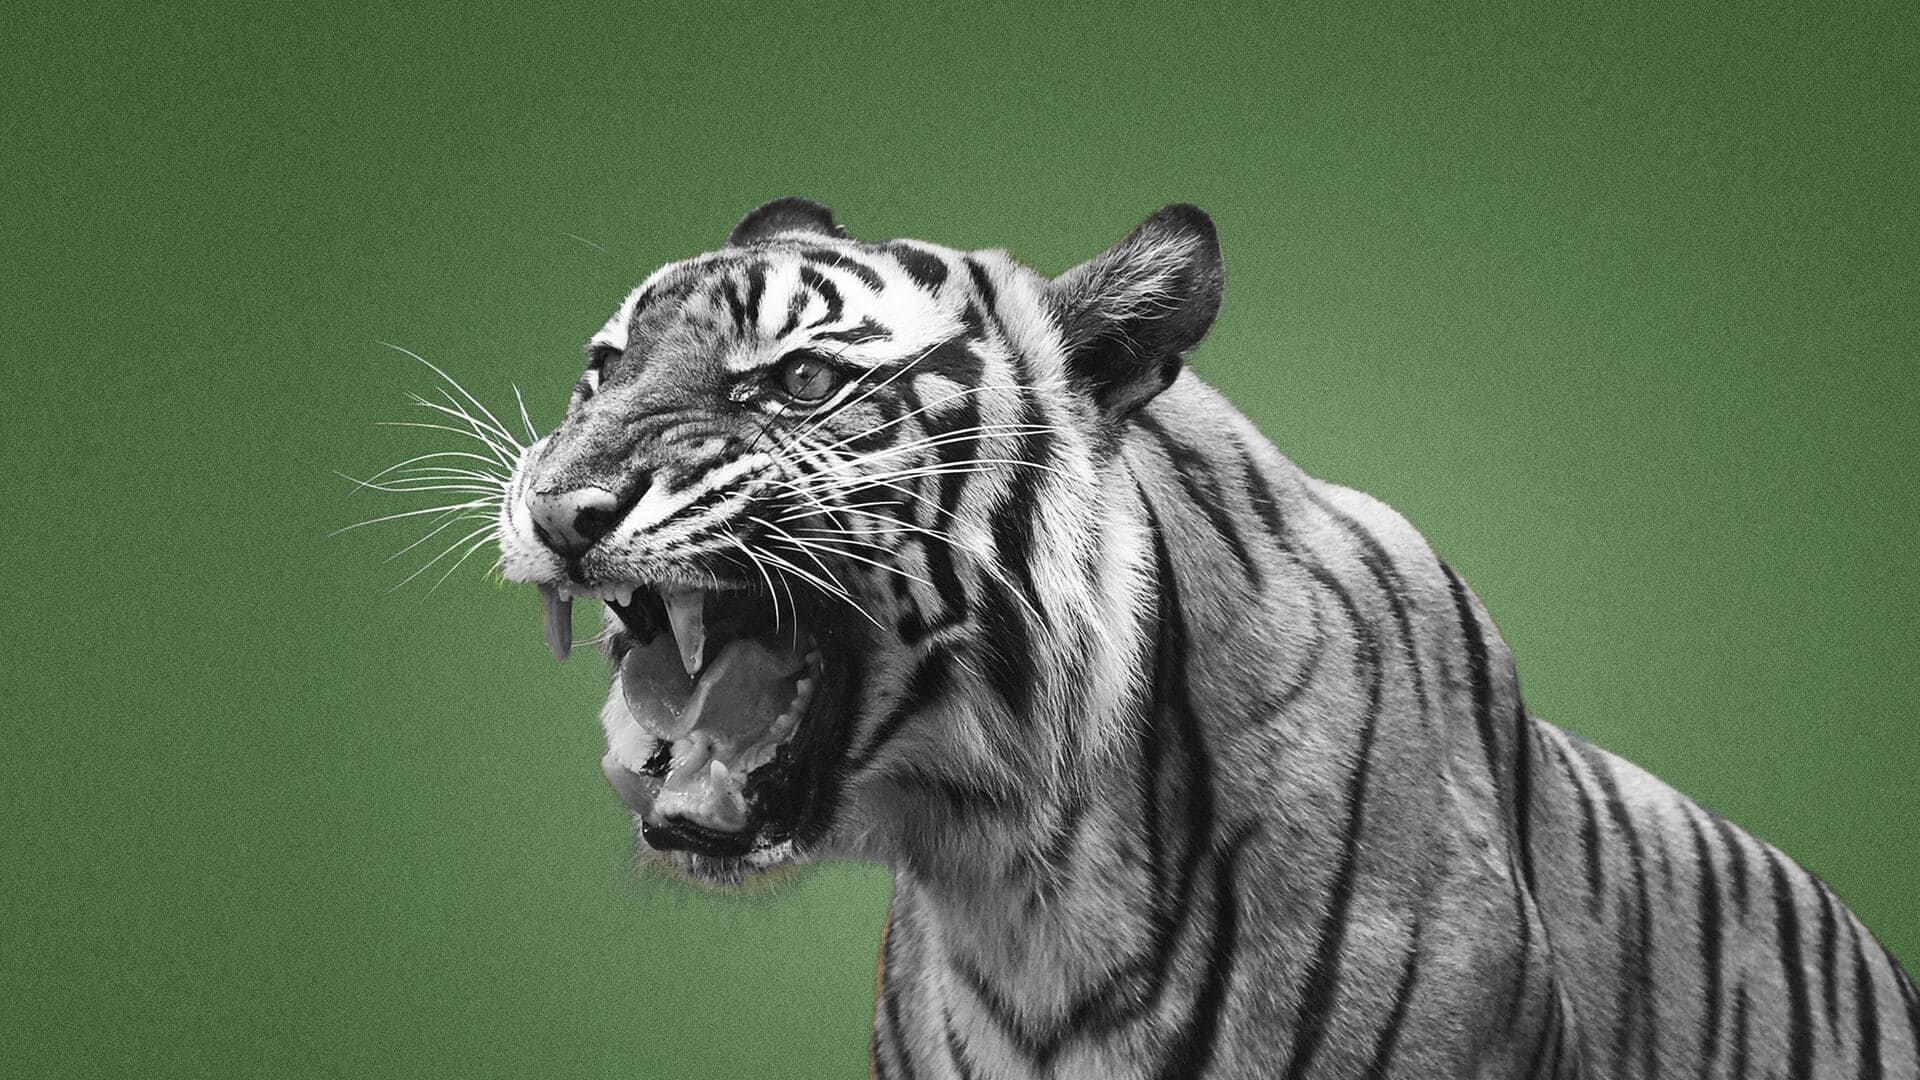 #NewsBytesExplainer: प्रोजेक्ट टाइगर के 50 साल, जानिए जंगलों में कैसे होती है बाघों की गिनती